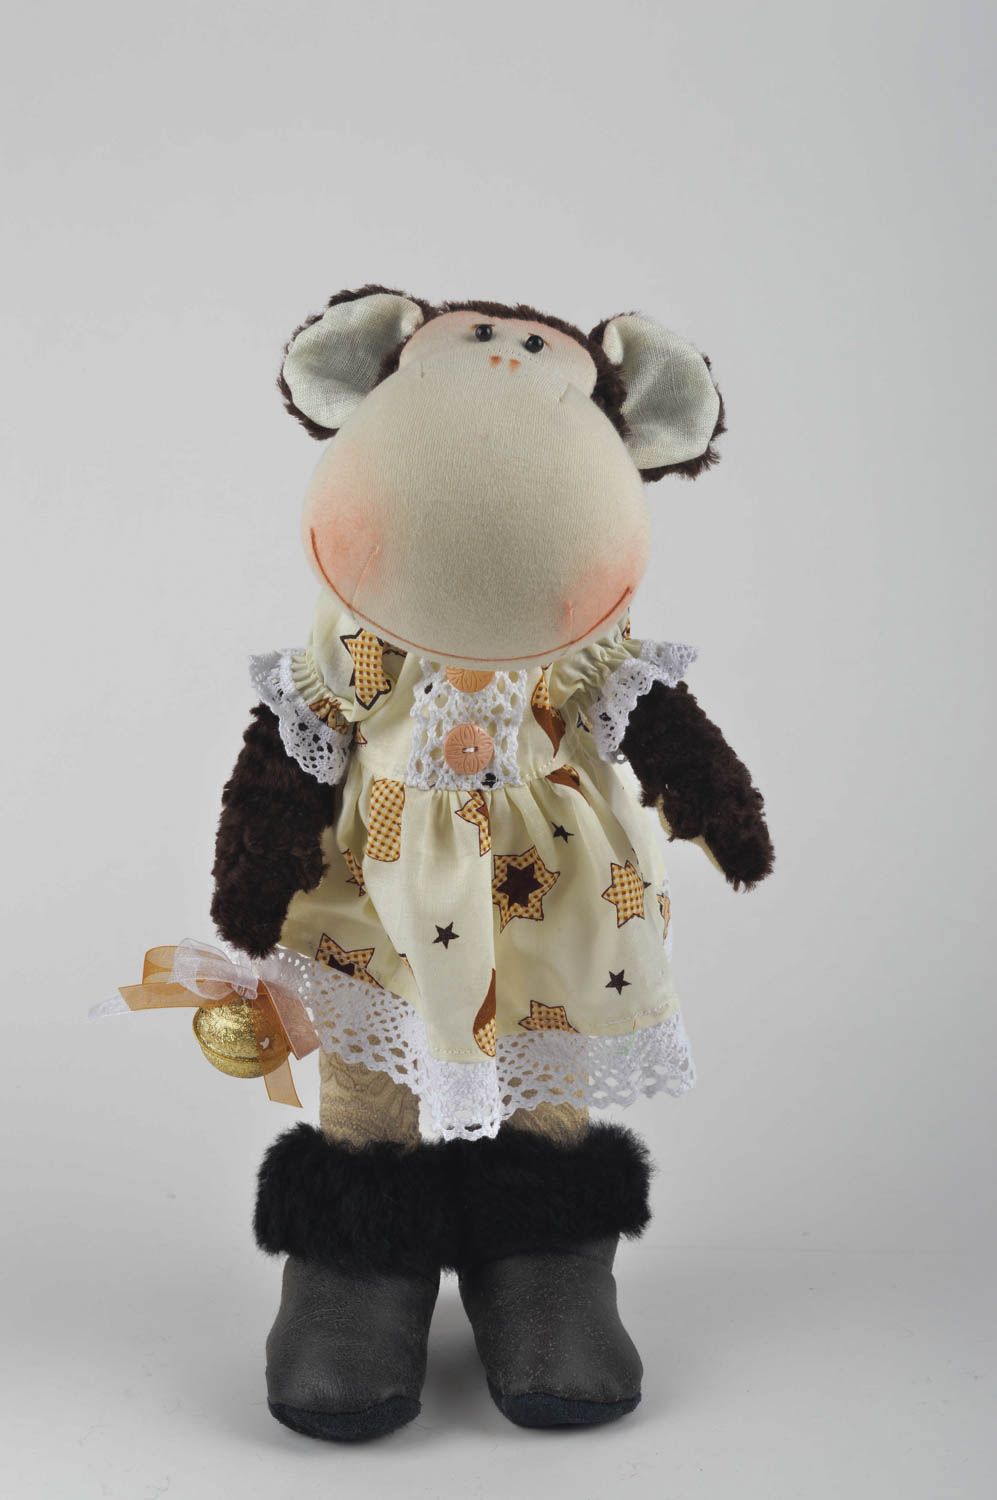 Kinder Spielzeug Stoff Tier handmade Affe Kuscheltier Geburtstag Geschenk schön foto 2